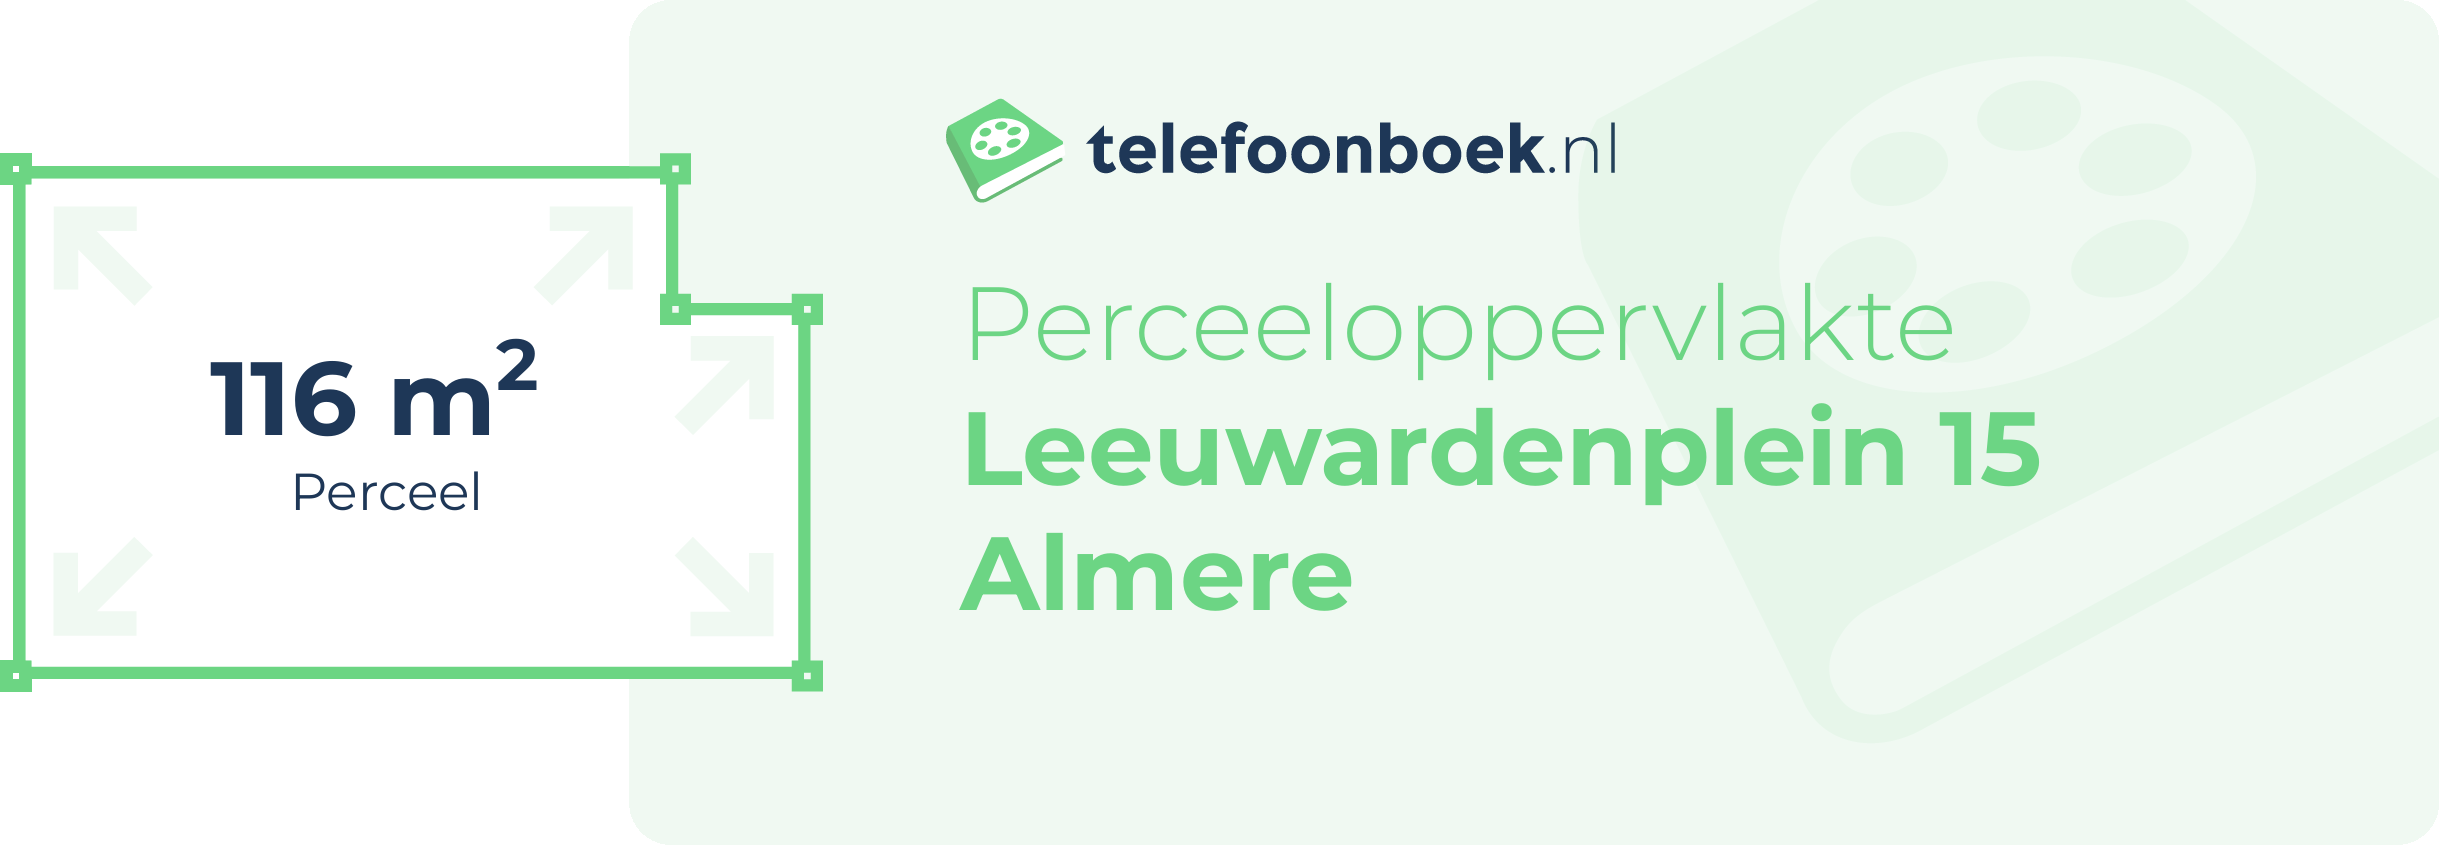 Perceeloppervlakte Leeuwardenplein 15 Almere